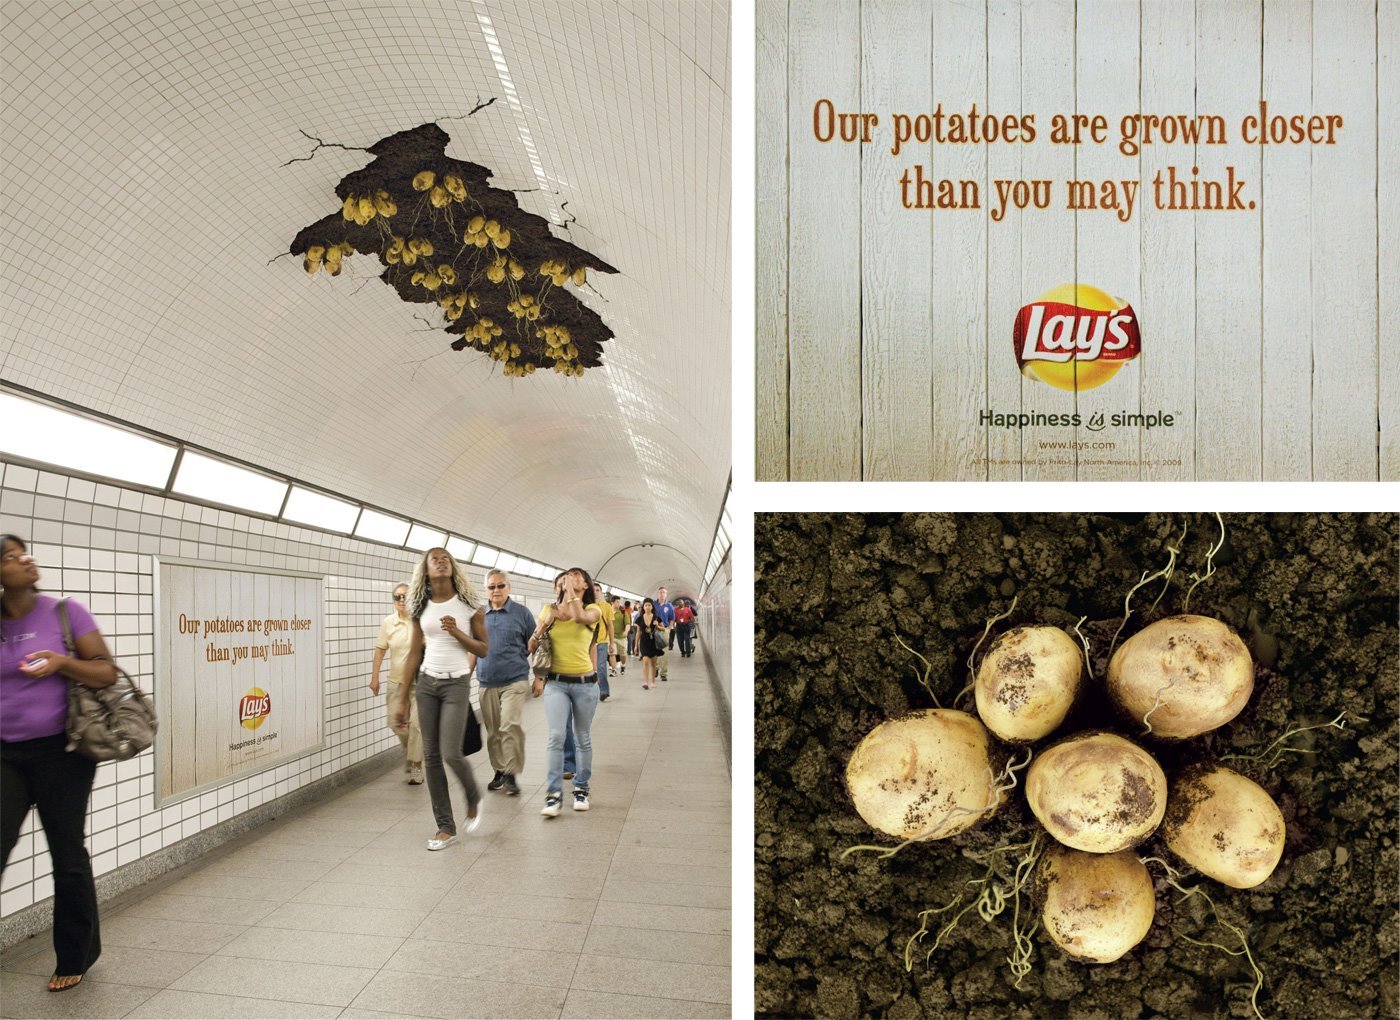 Une publicité pour des chips